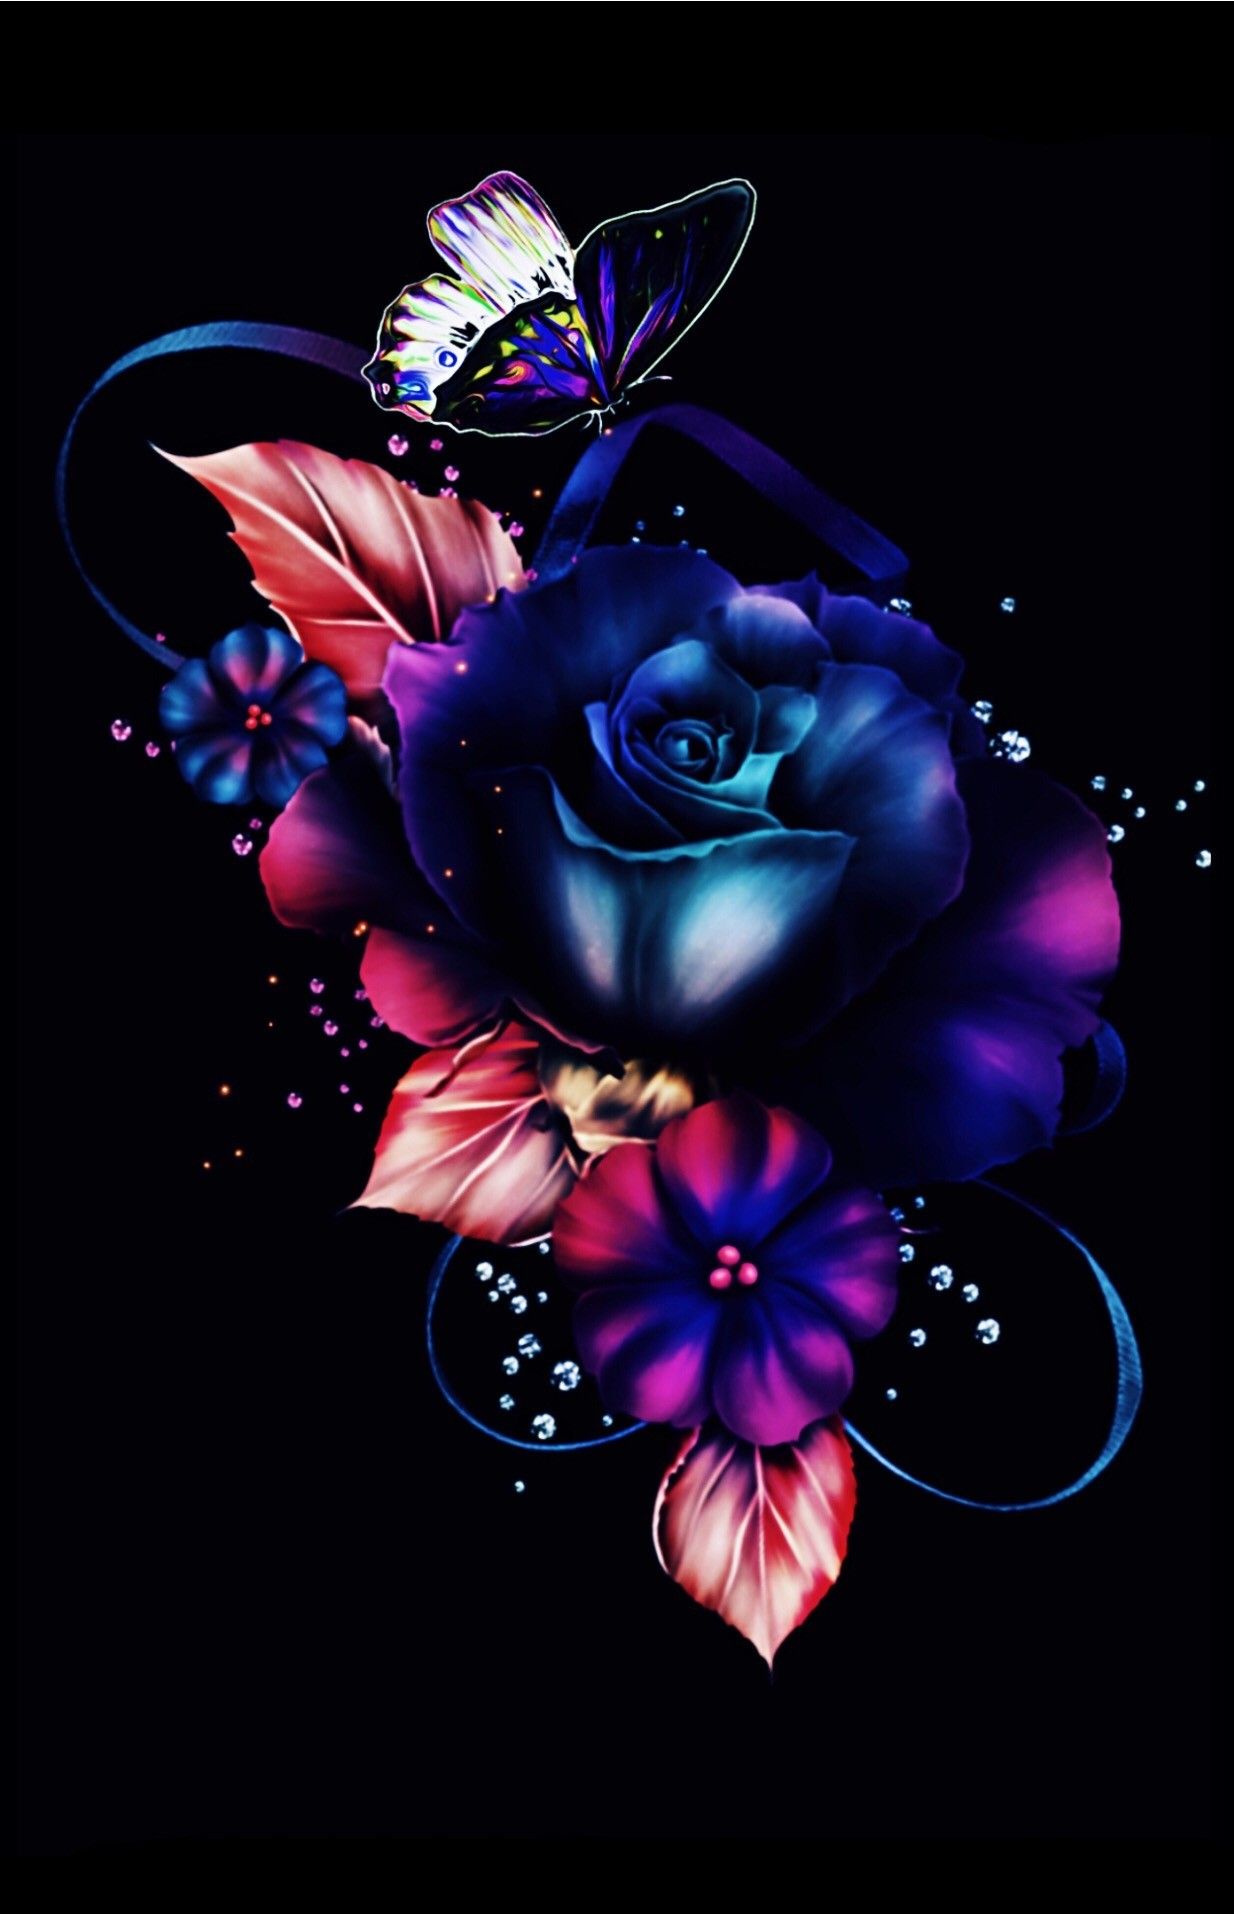 Wallpaper background. Flower wallpaper, Rose flower wallpaper, Blue roses wallpaper